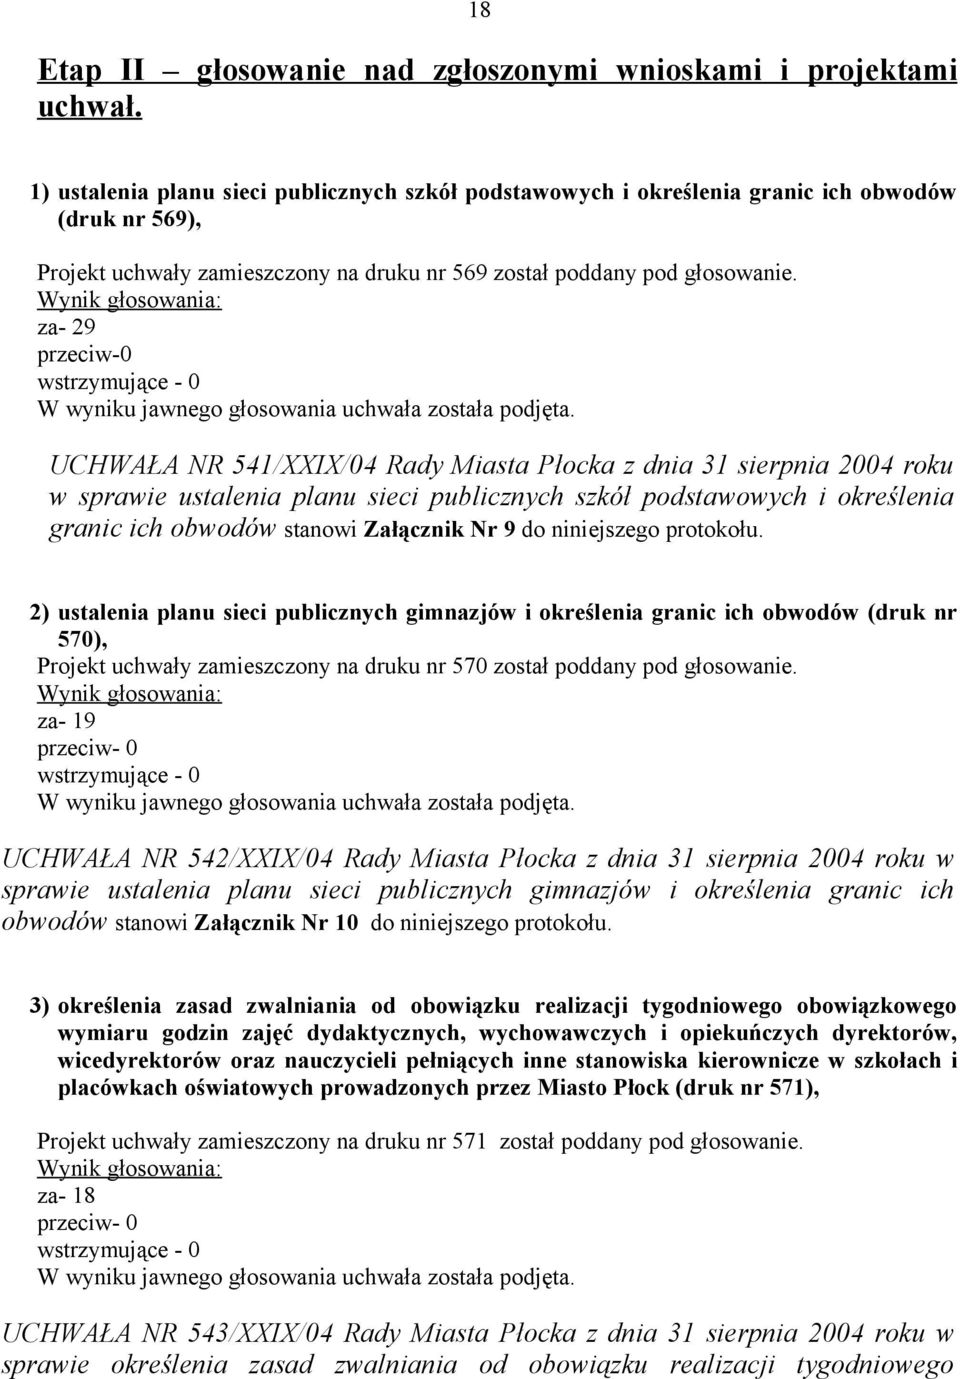 za- 29 przeciw-0 UCHWAŁA NR 541/XXIX/04 Rady Miasta Płocka z dnia 31 sierpnia 2004 roku w sprawie ustalenia planu sieci publicznych szkół podstawowych i określenia granic ich obwodów stanowi